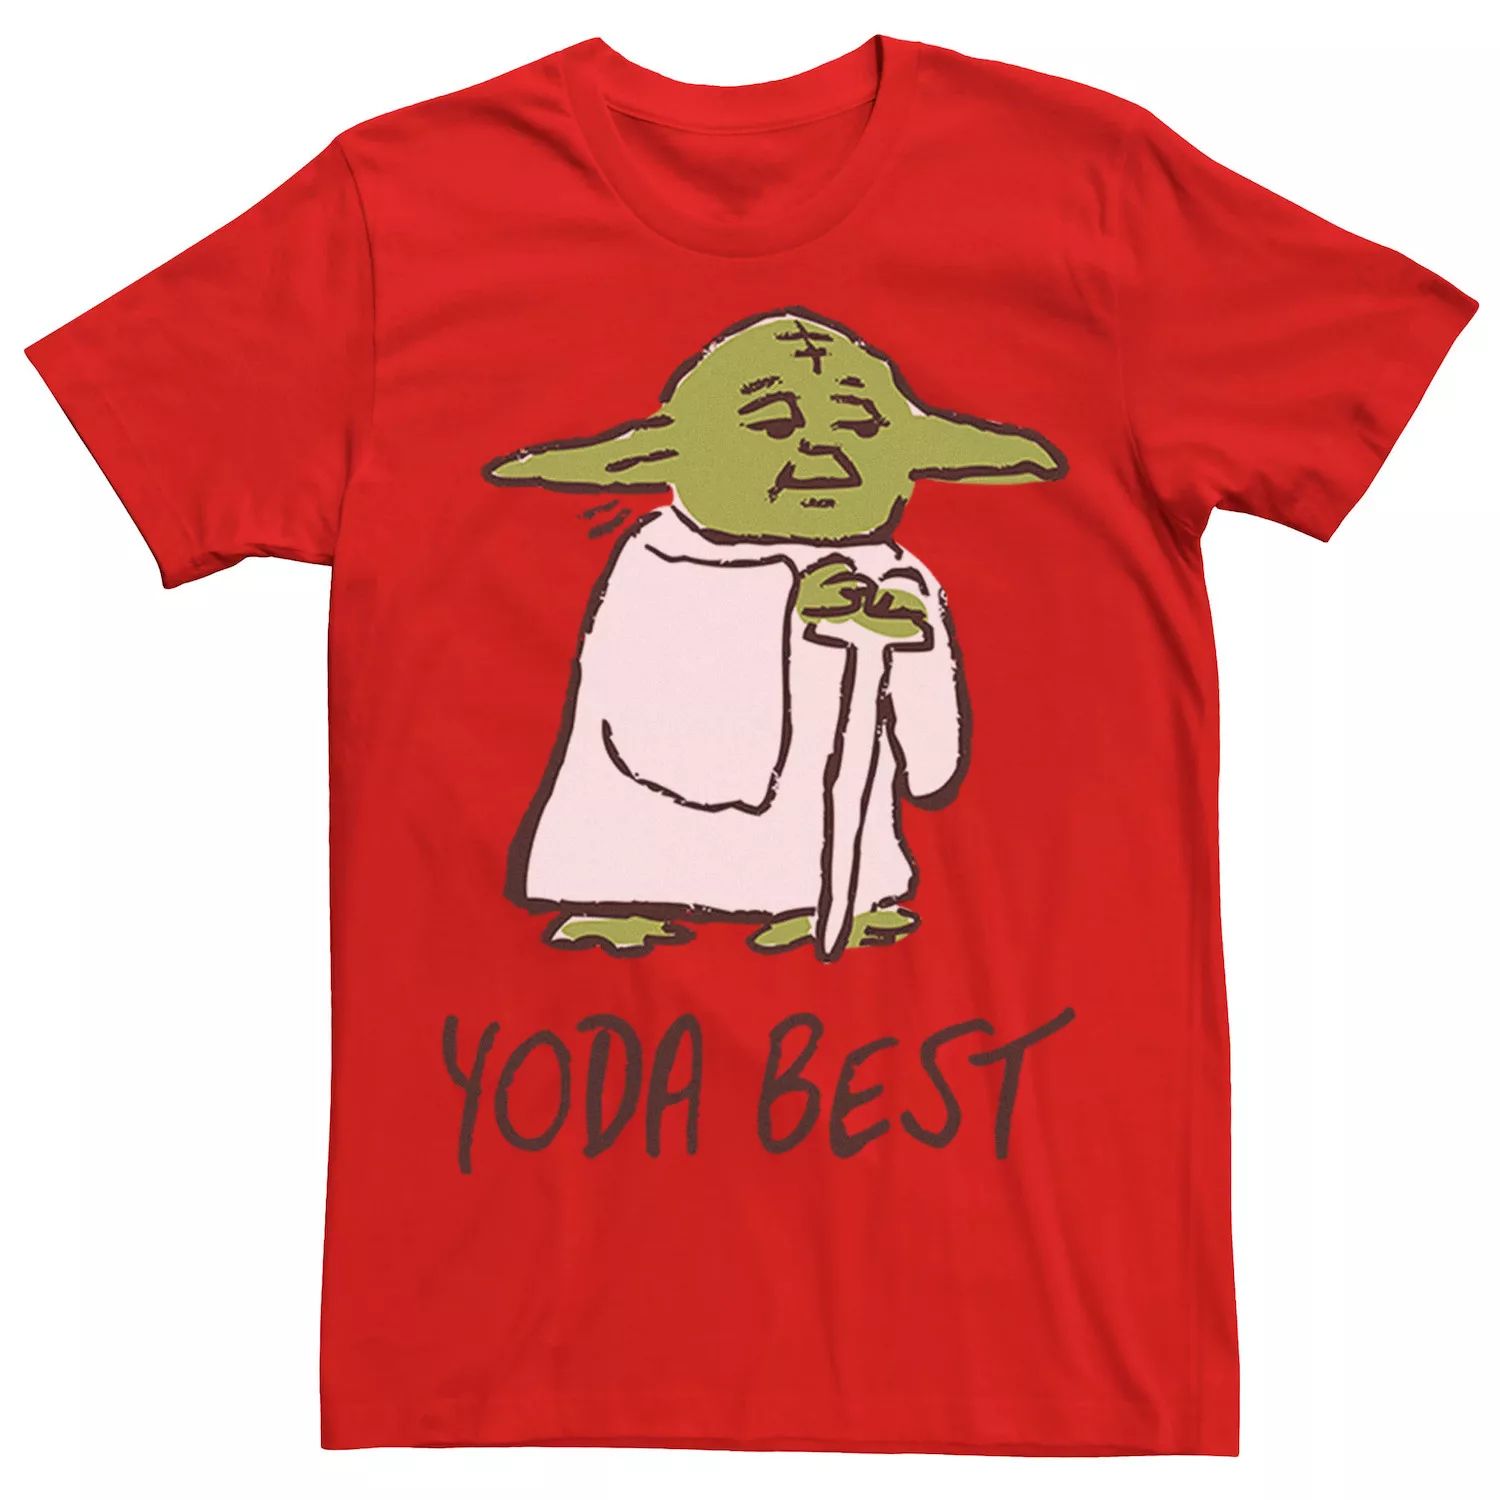 Мужская футболка с лучшим портретным эскизом «Звездные войны Йода» Star Wars, красный